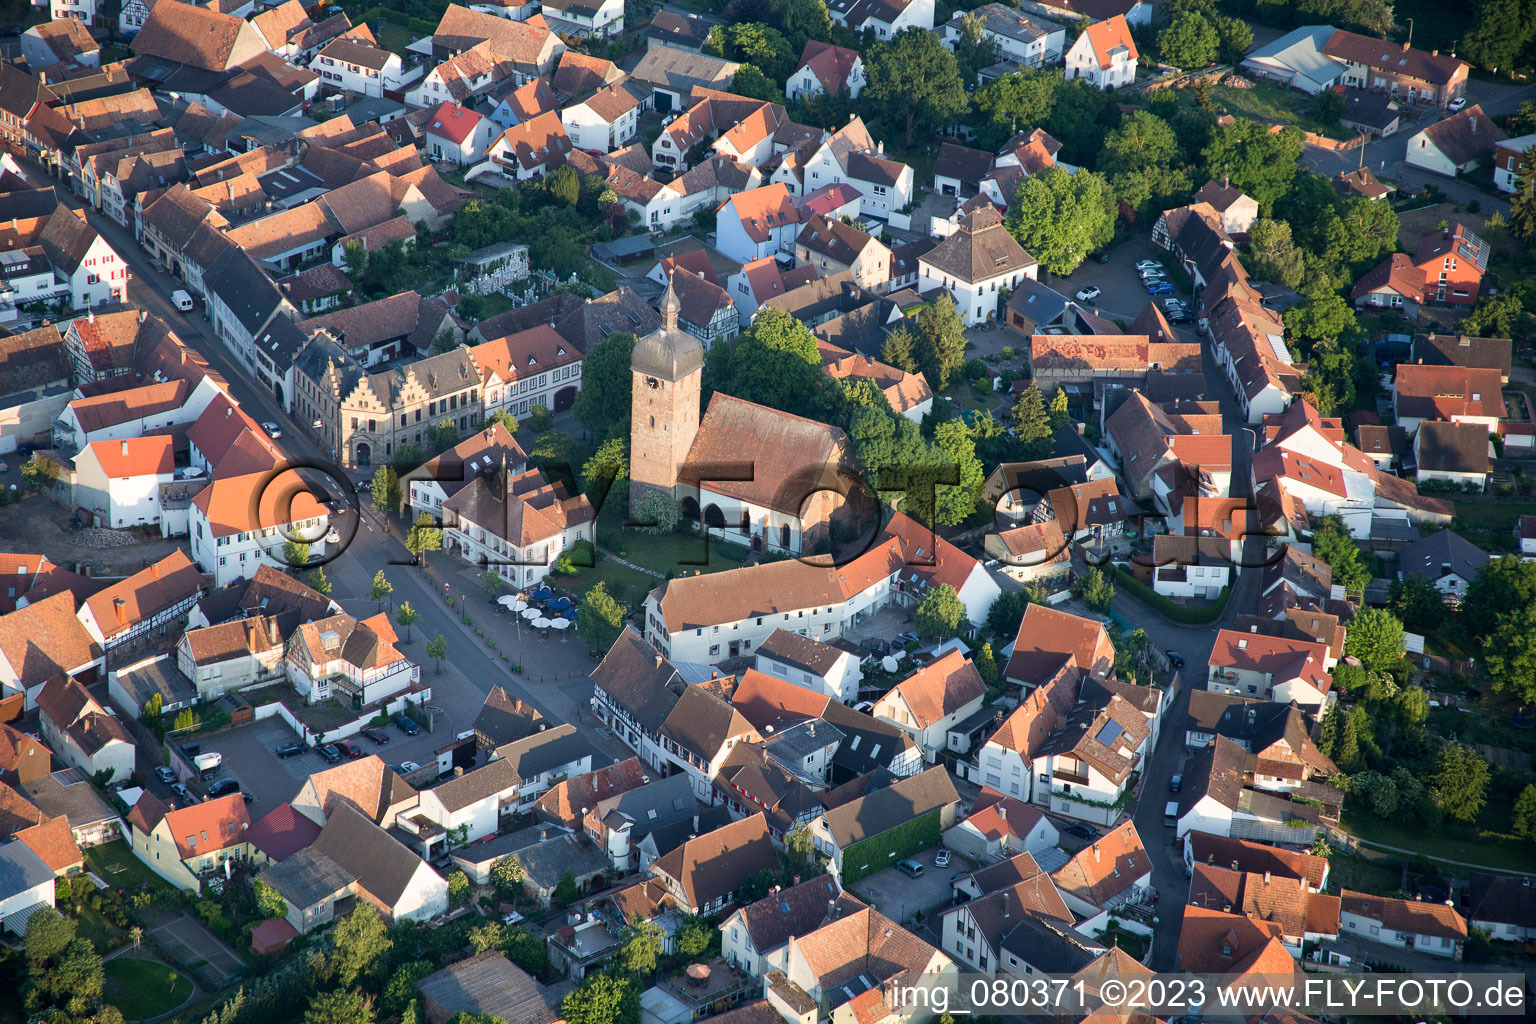 District Billigheim in Billigheim-Ingenheim in the state Rhineland-Palatinate, Germany seen from above